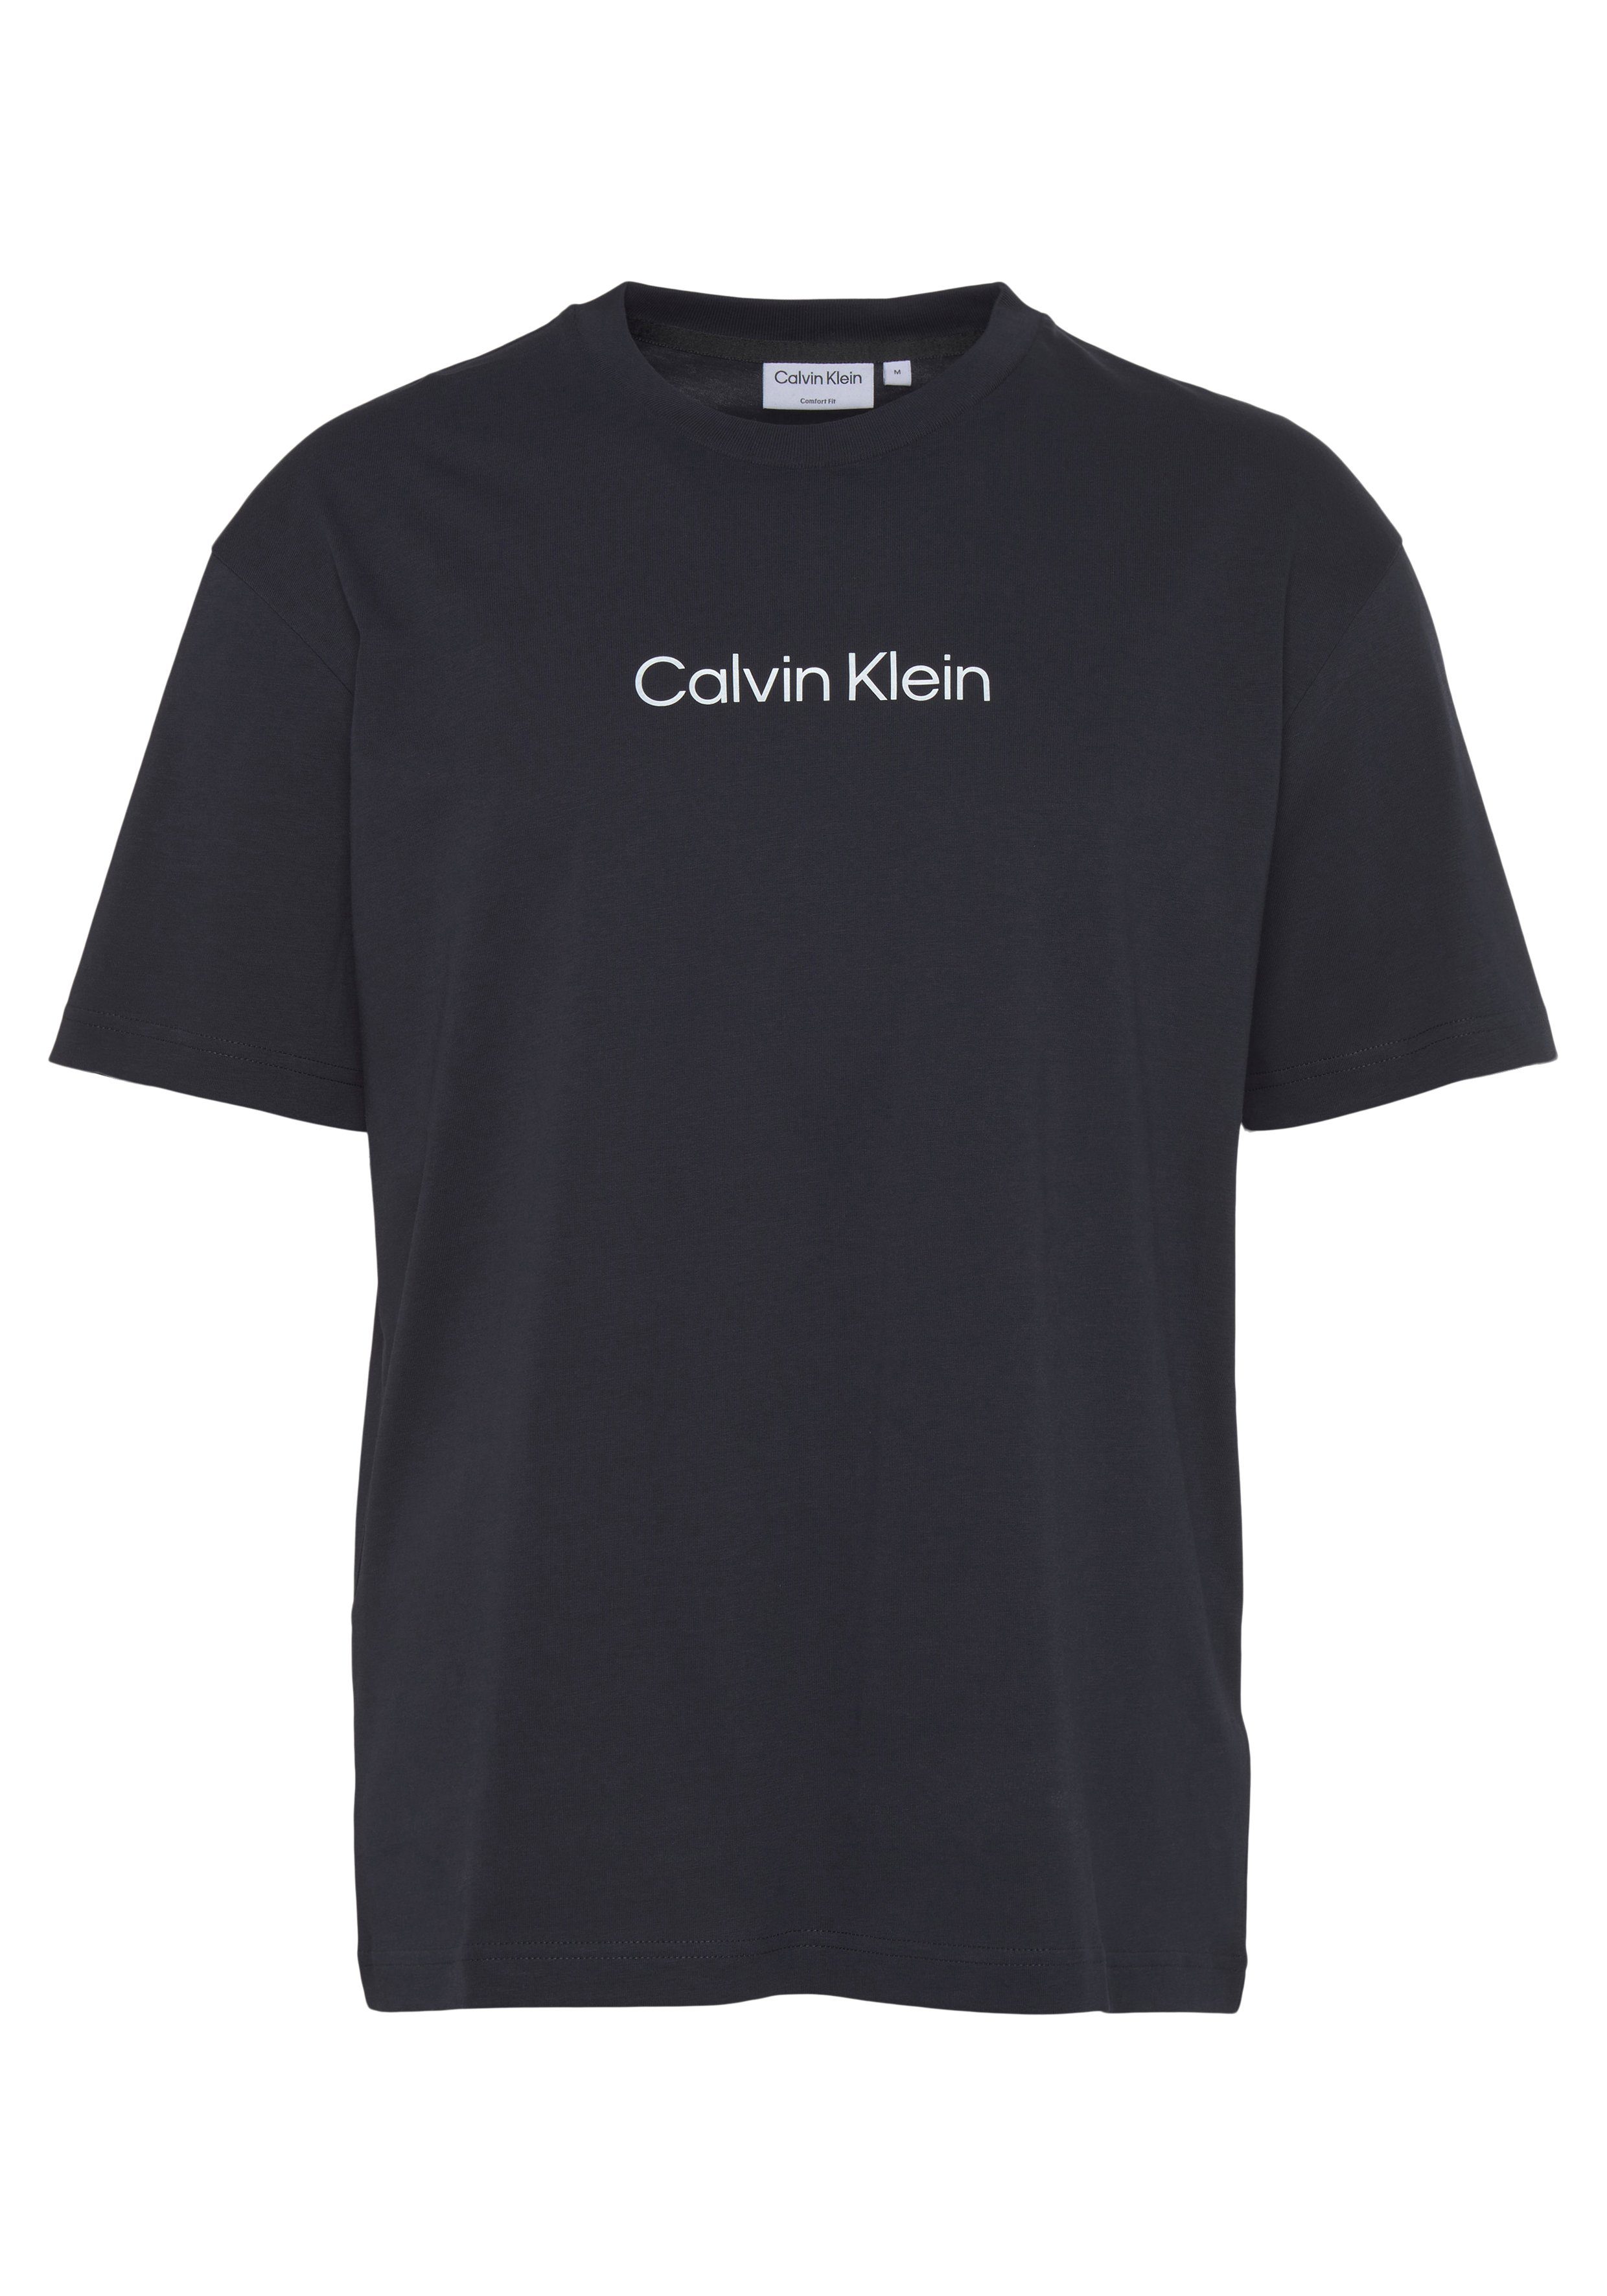 COMFORT Klein T-SHIRT Night HERO T-Shirt mit Markenlabel aufgedrucktem Sky LOGO Calvin